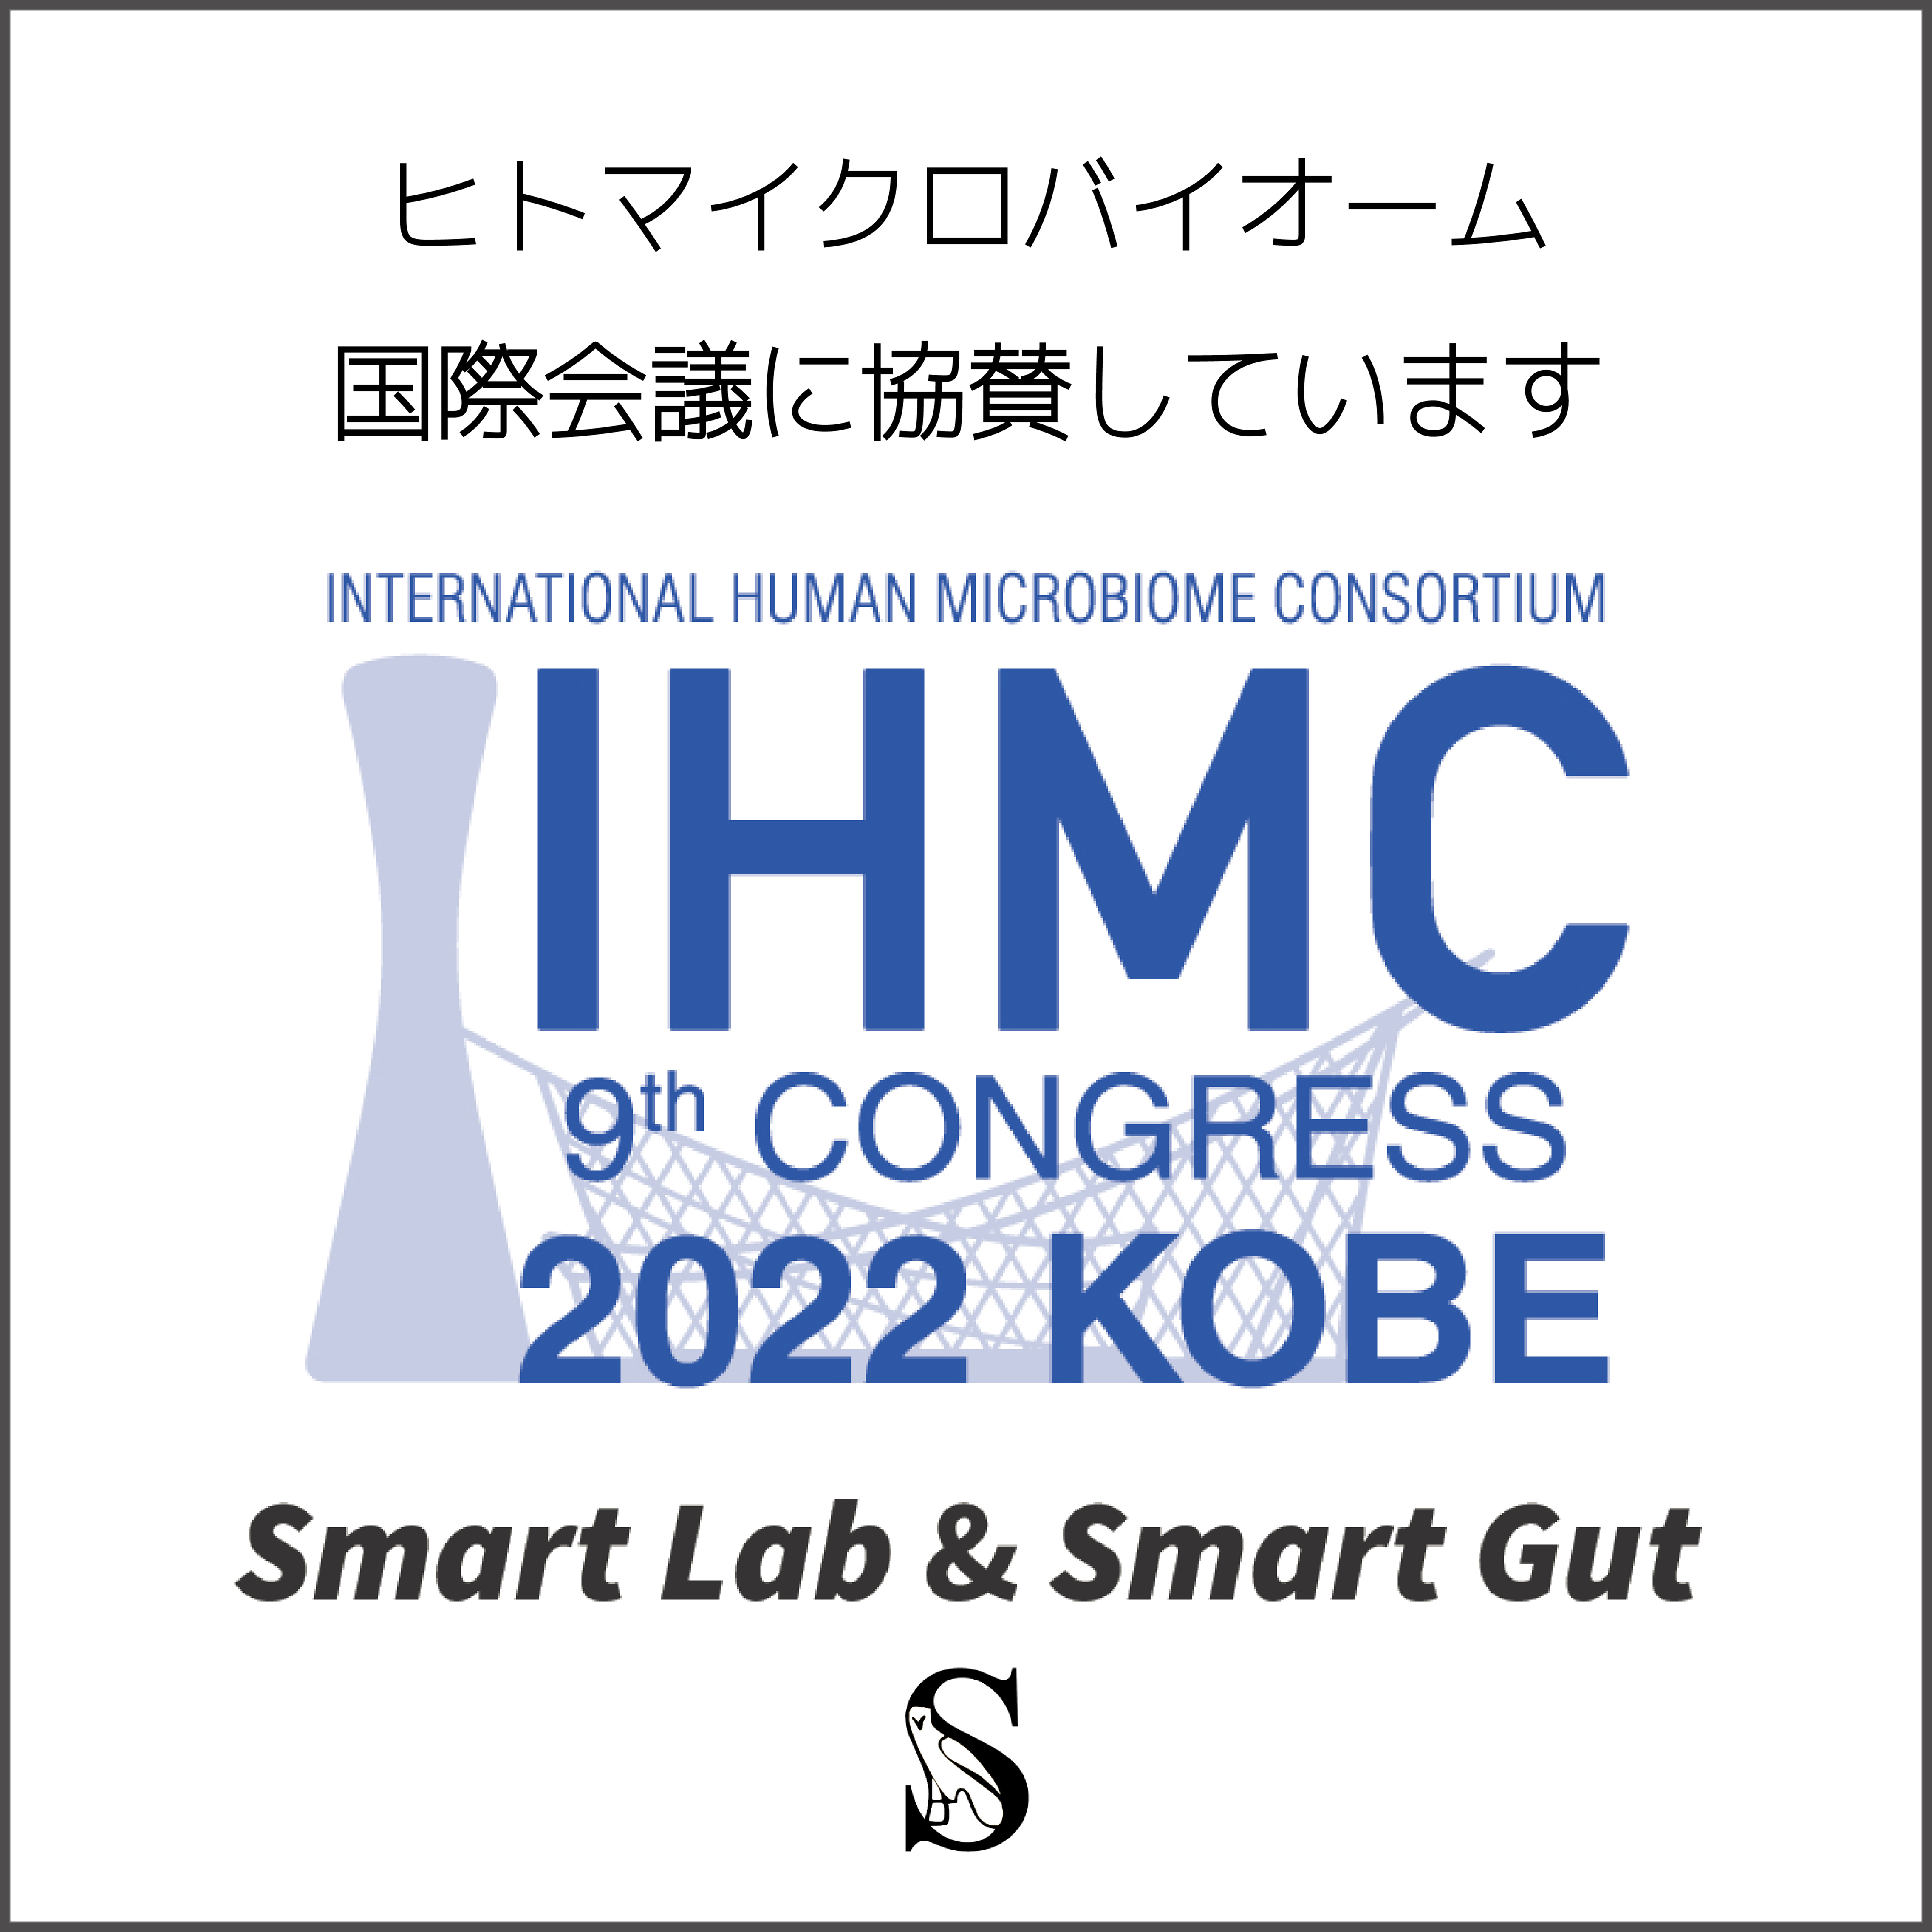 株式会社Smart Lab研究部門スマートガット(Smart Gut)が
国際ヒトマイクロバイオームコングレス
(IHMC2022 KOBE)に協賛